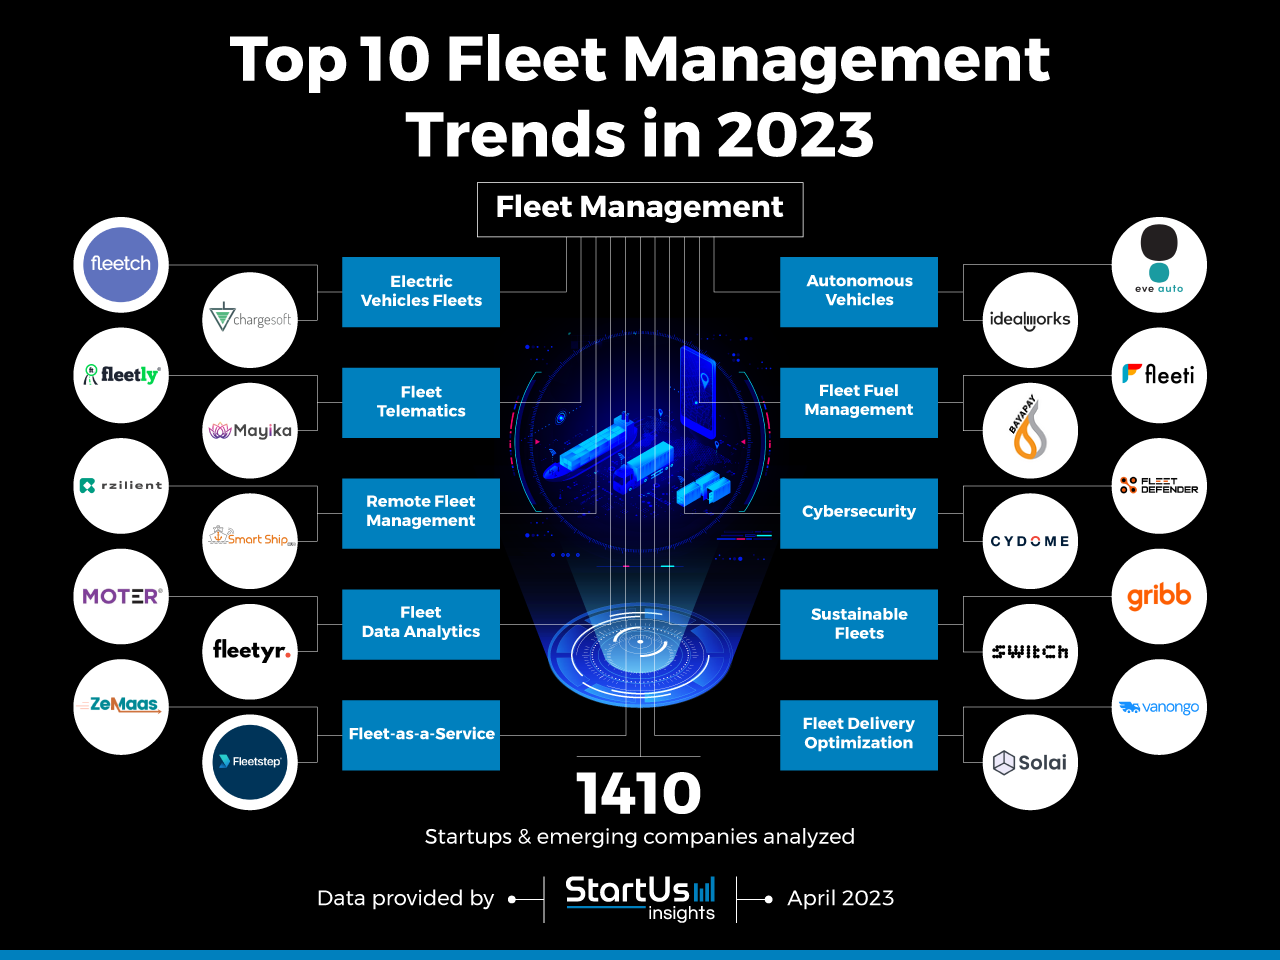 Top 10 Fleet Management Trends in 2023